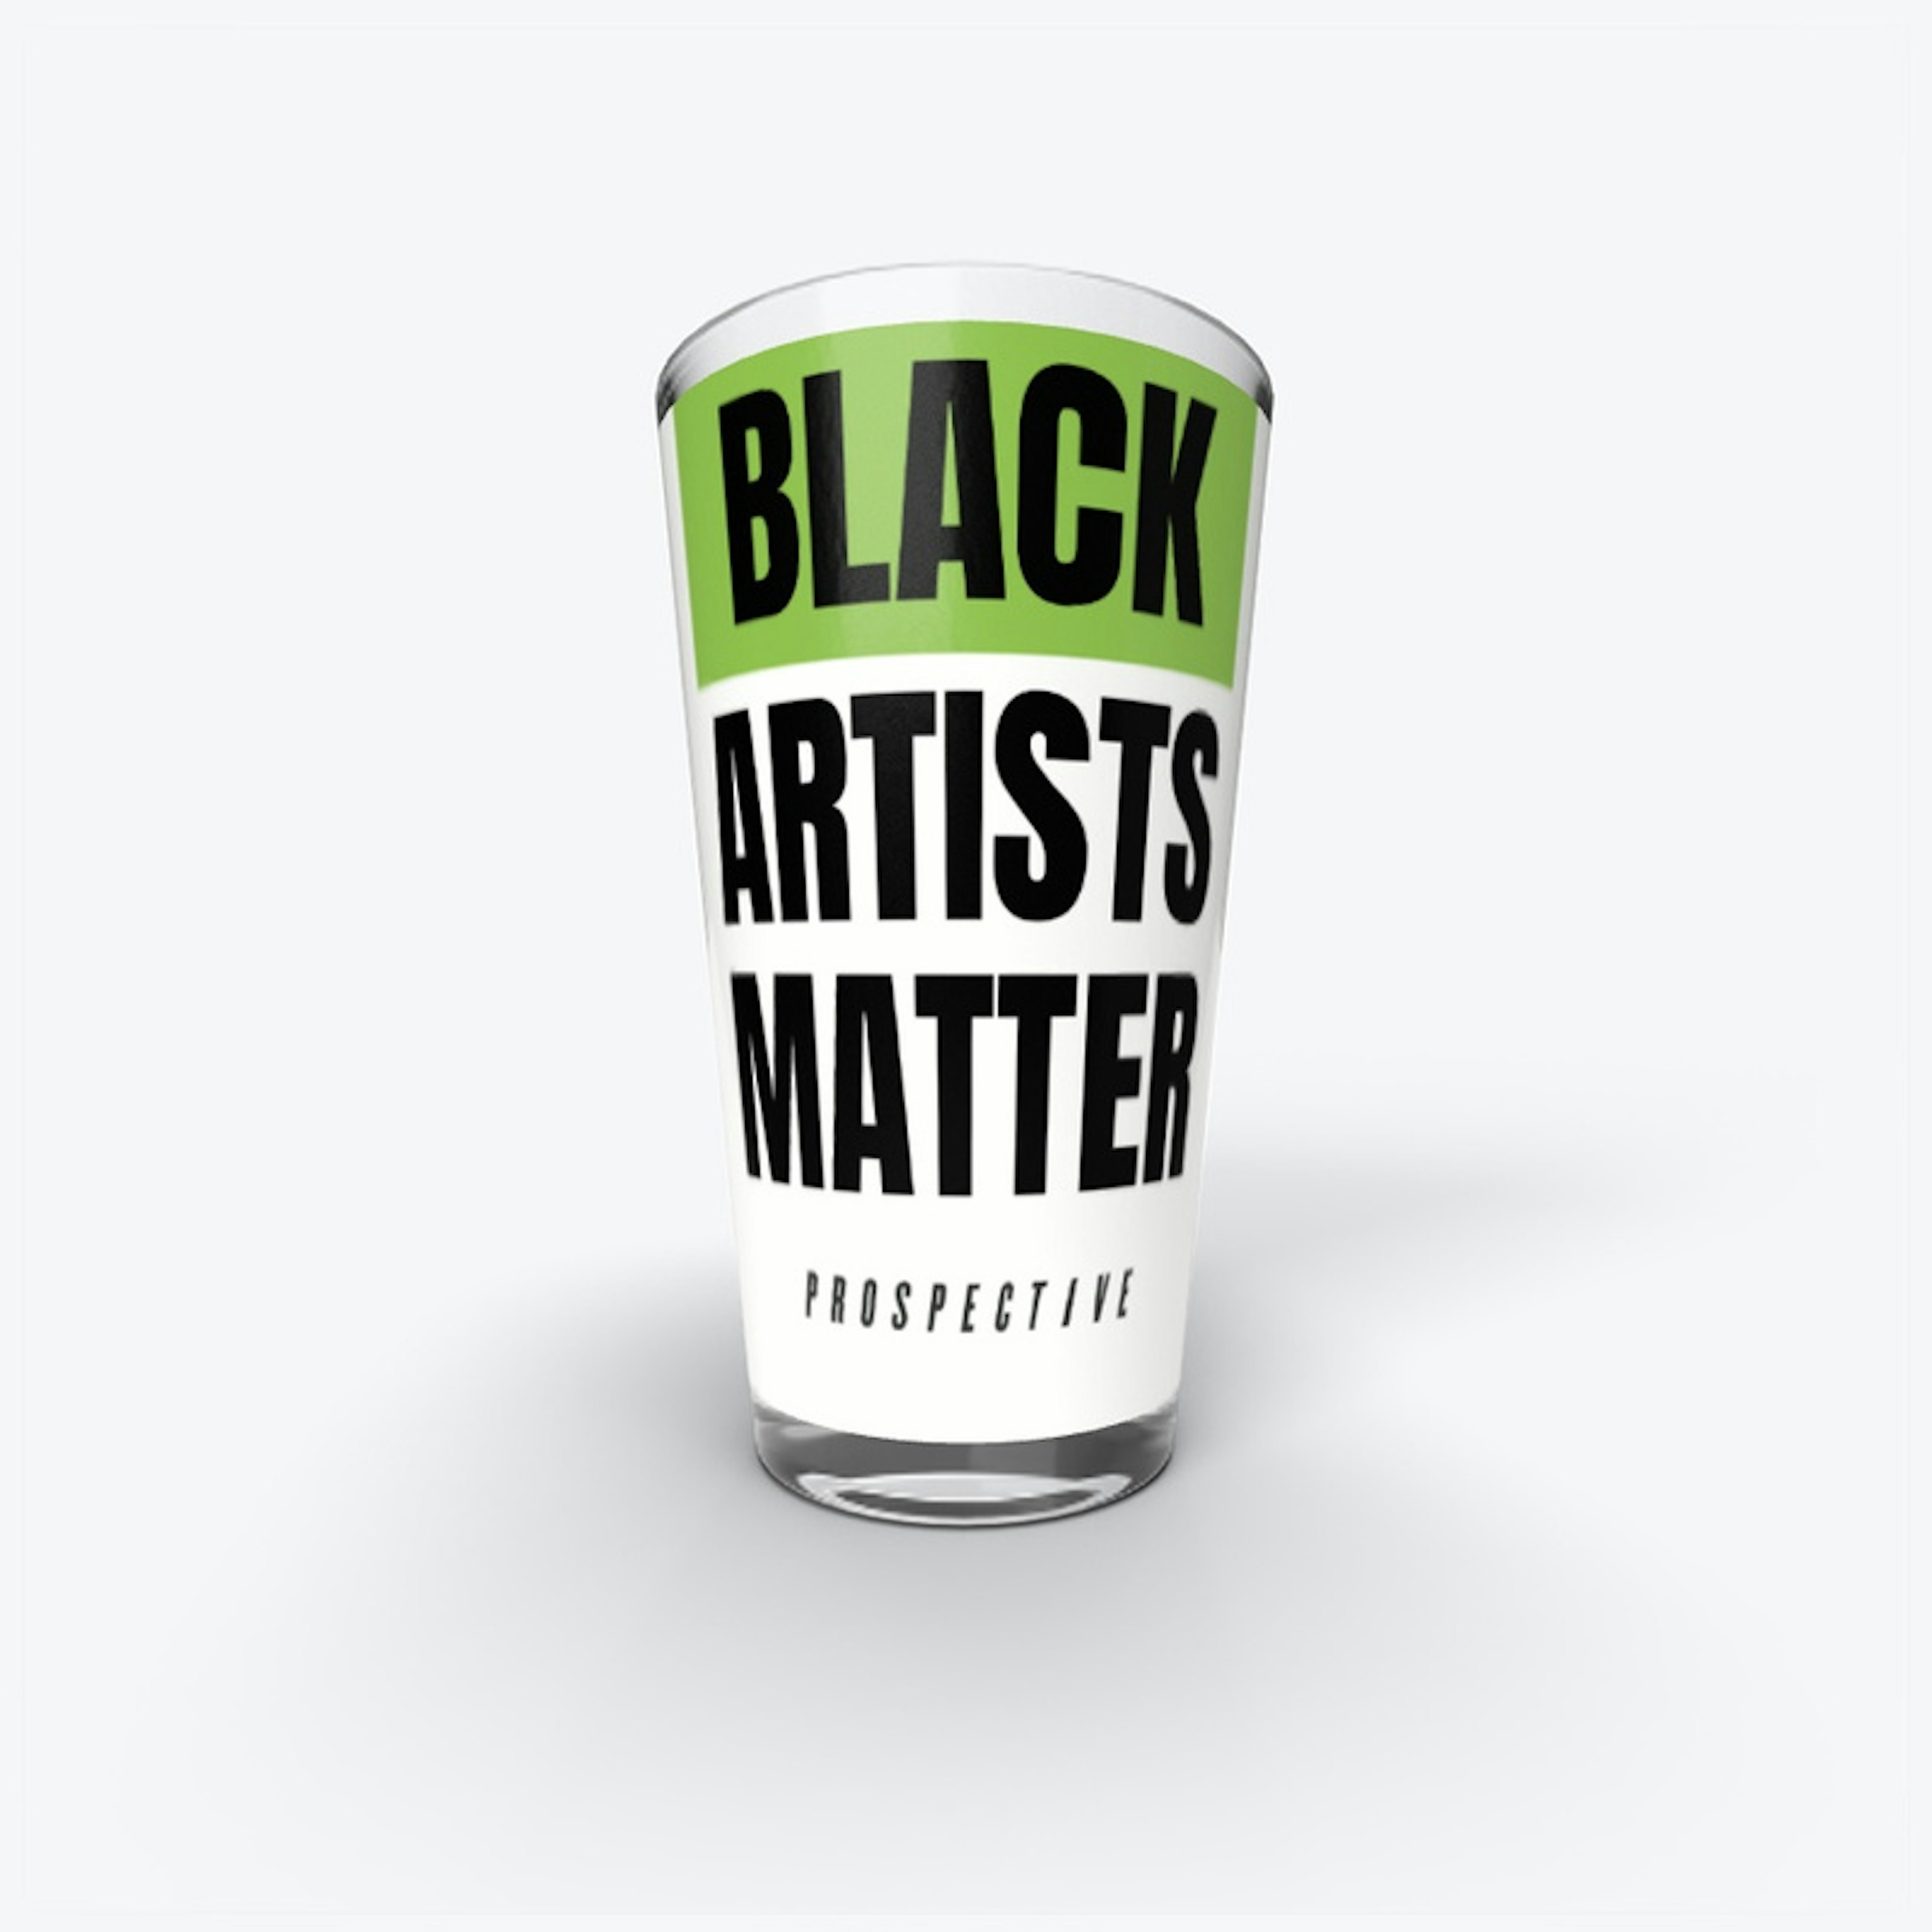 Black Artists Matter